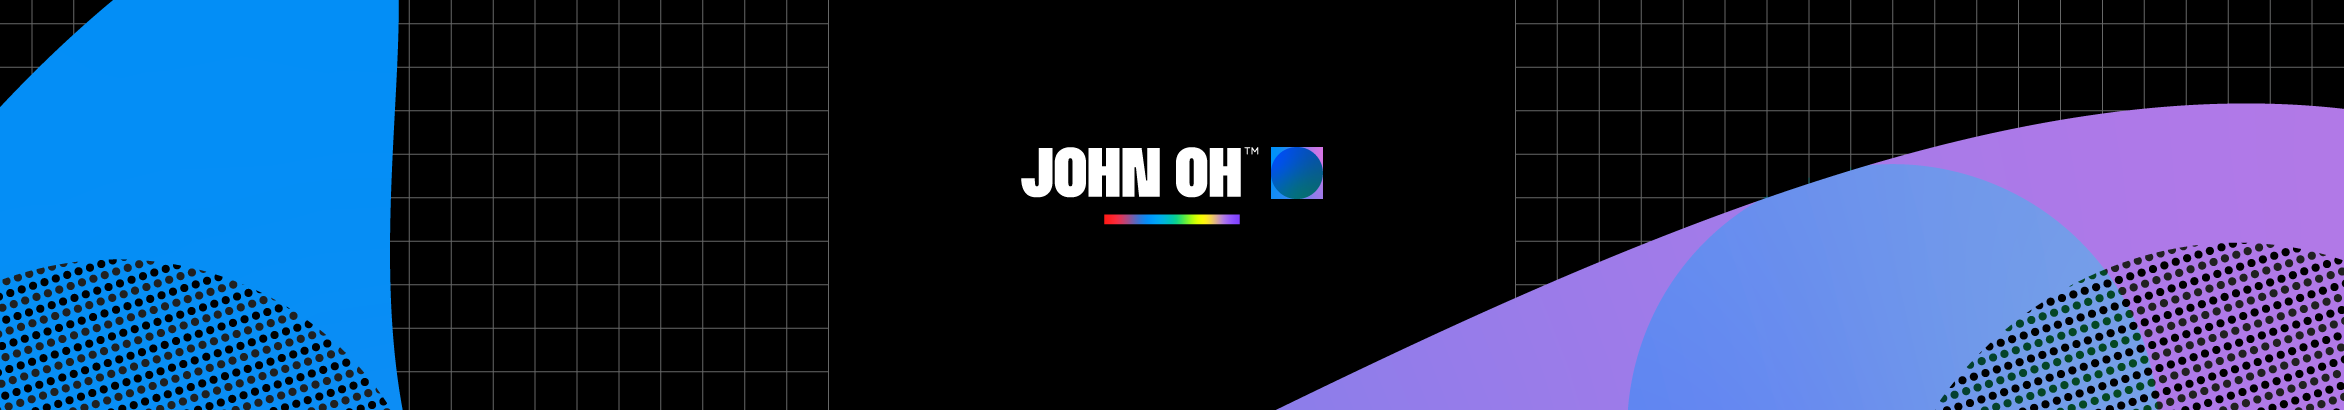 John Olivares のプロファイルバナー